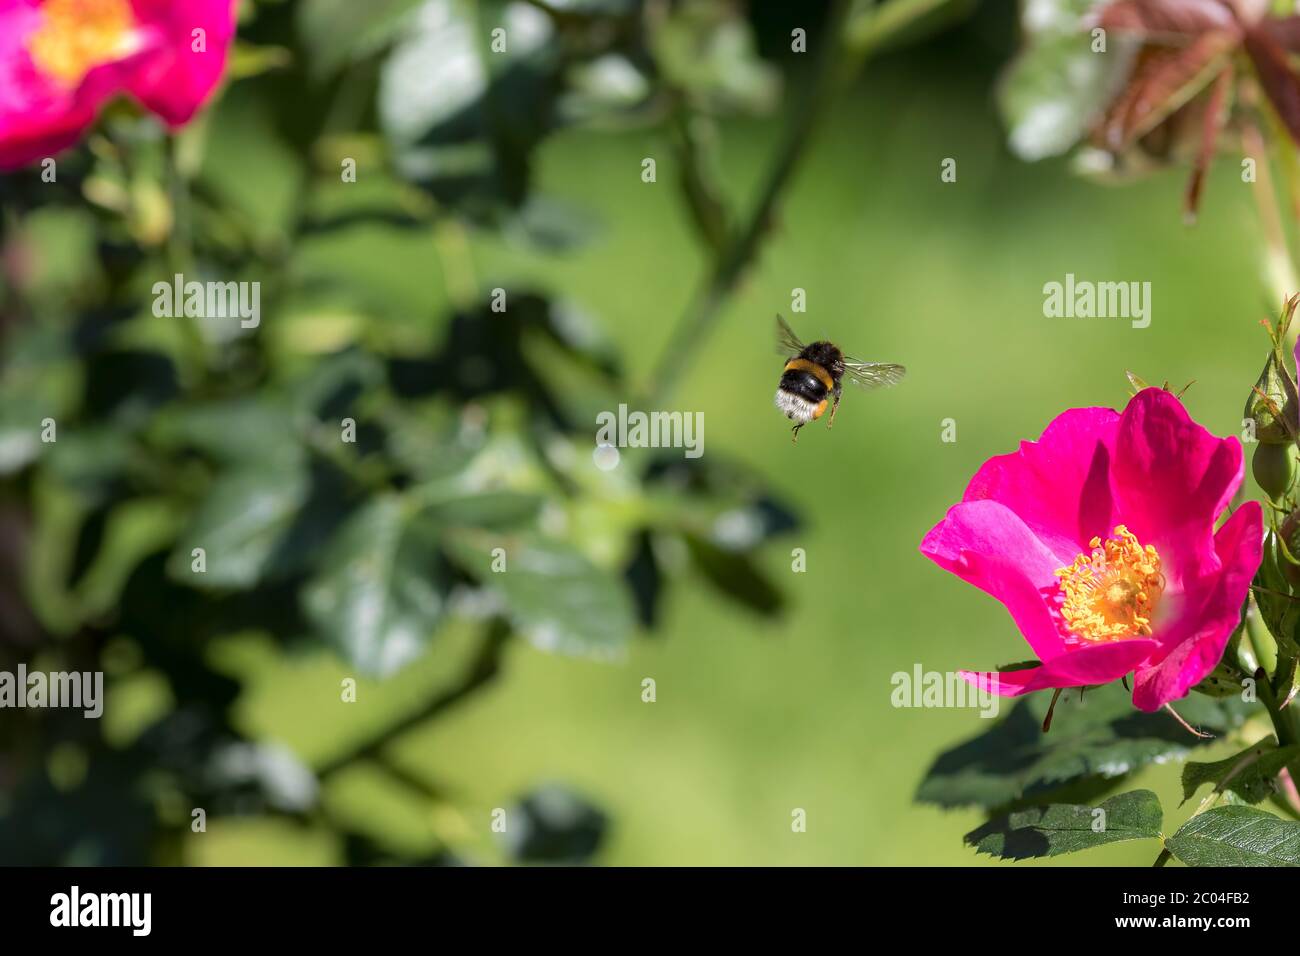 Impollinazione delle api. Bumblebee insetti volare a un giardino fiore di rose in primavera o estate. Ape che si abbonda a metà aria sopra i petali rosa caldi e giallo balsami Foto Stock